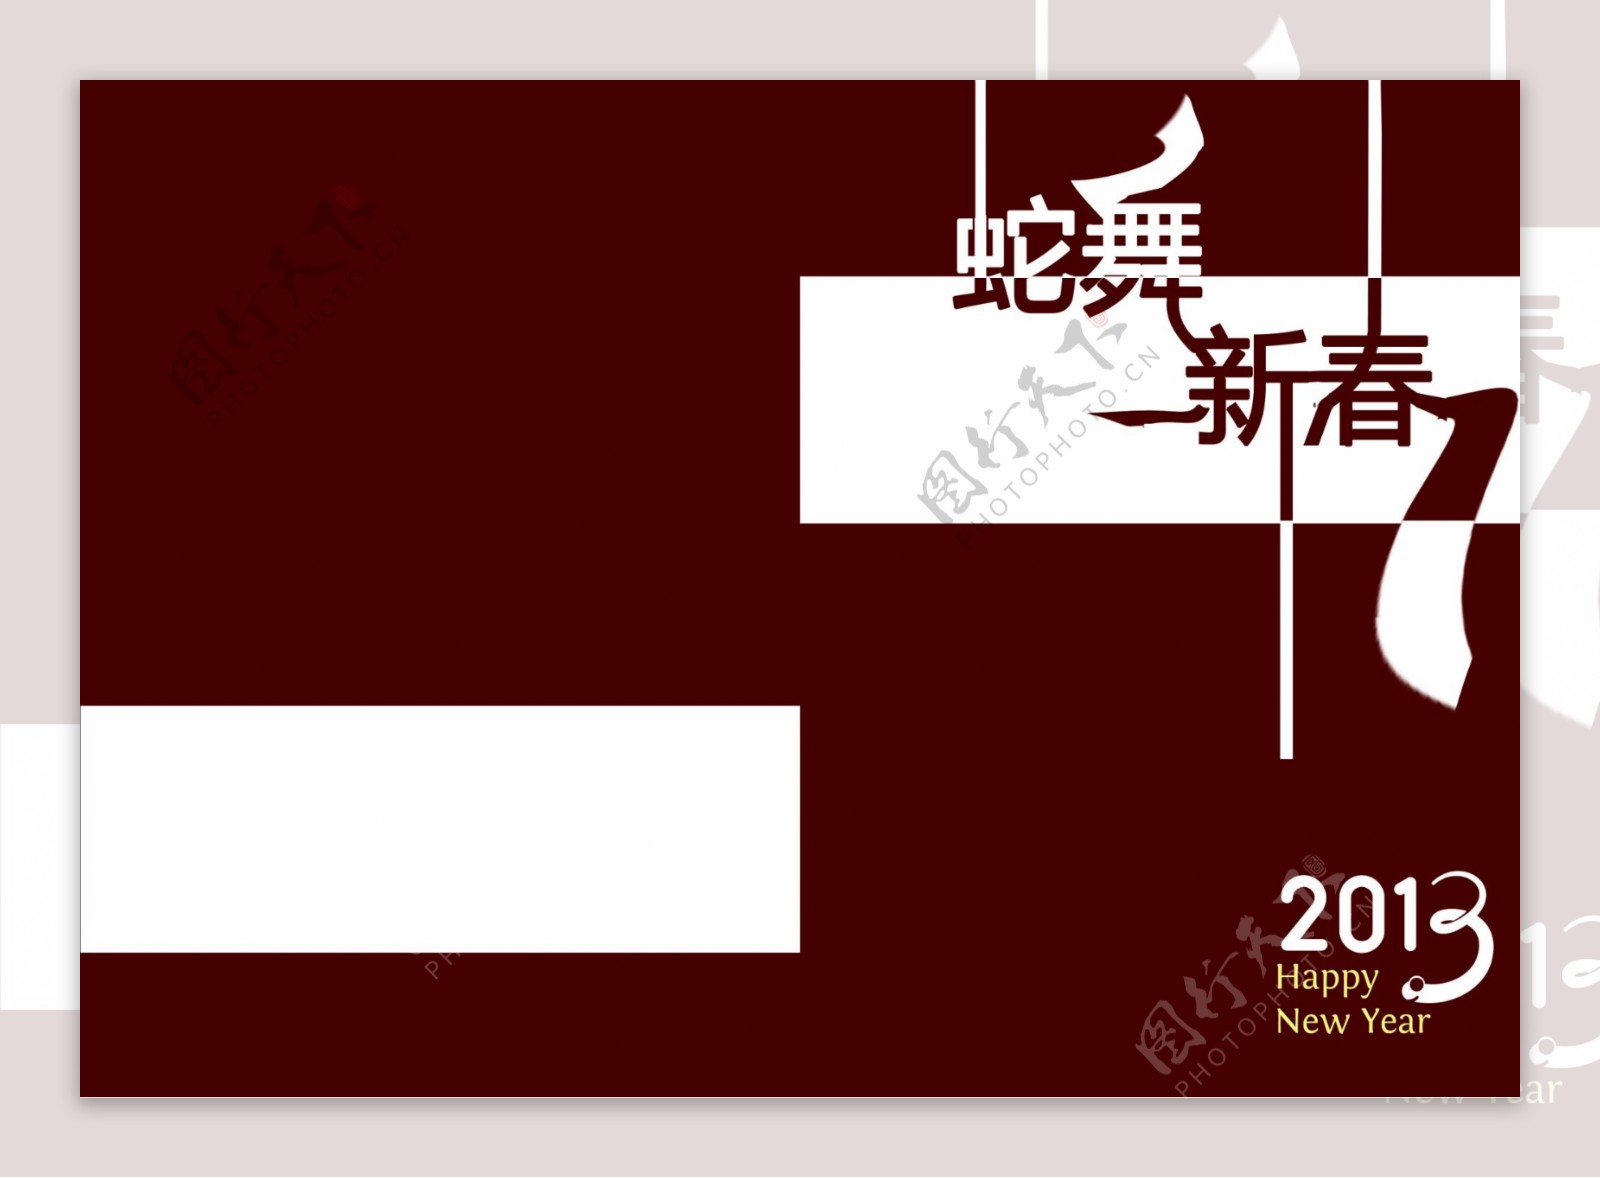 2013蛇舞新春手册封面图片